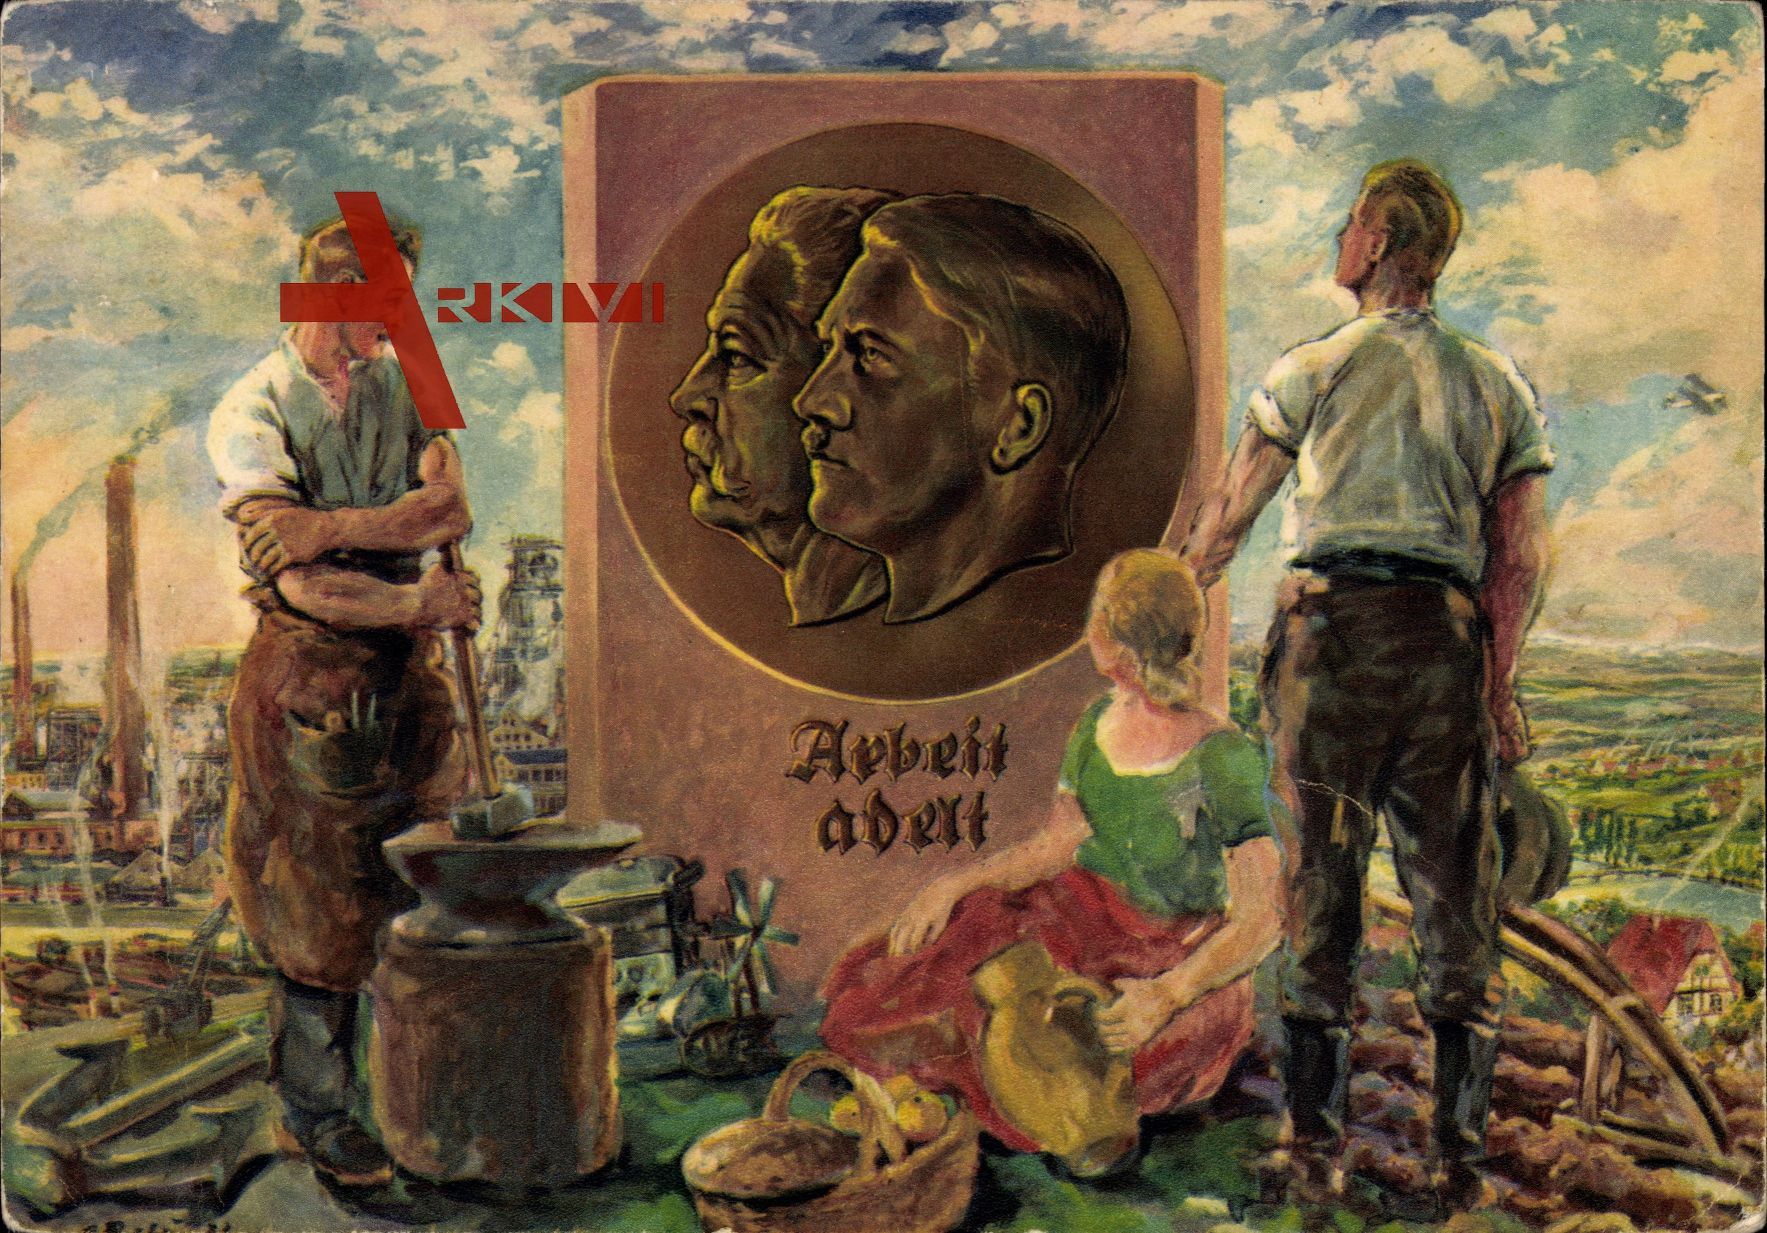 Arbeit adelt, Relief-Portraits von Adolf Hitler und Paul von Hindenburg, veröffentlicht zum 1. 10. 1933 - deutscher Erntedanktag